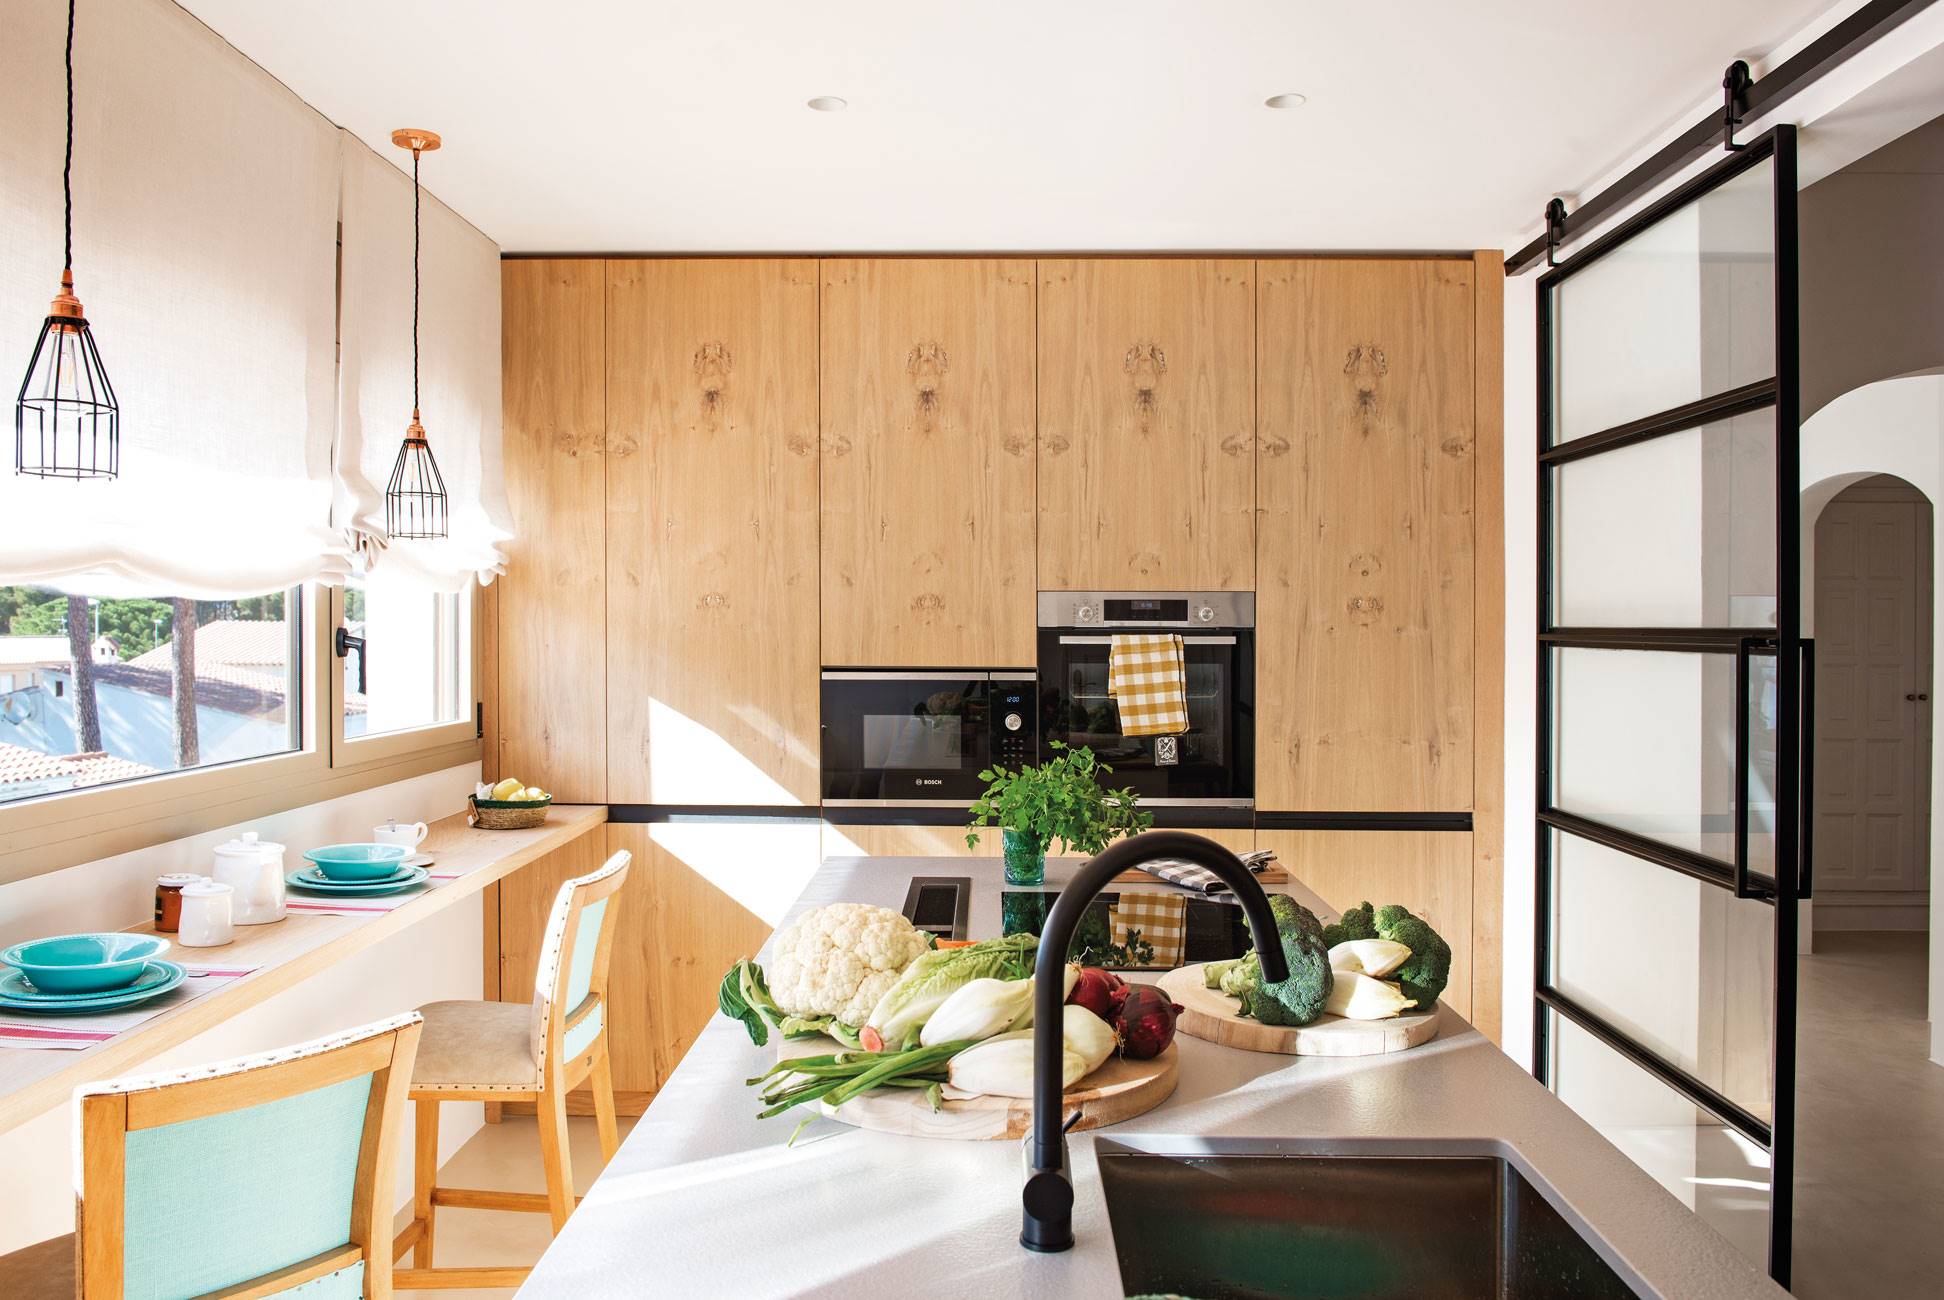 Moderna cocina blanca y de madera con balda en la pared a modo de mesa para desayunar y puerta de cristal ocrredera.